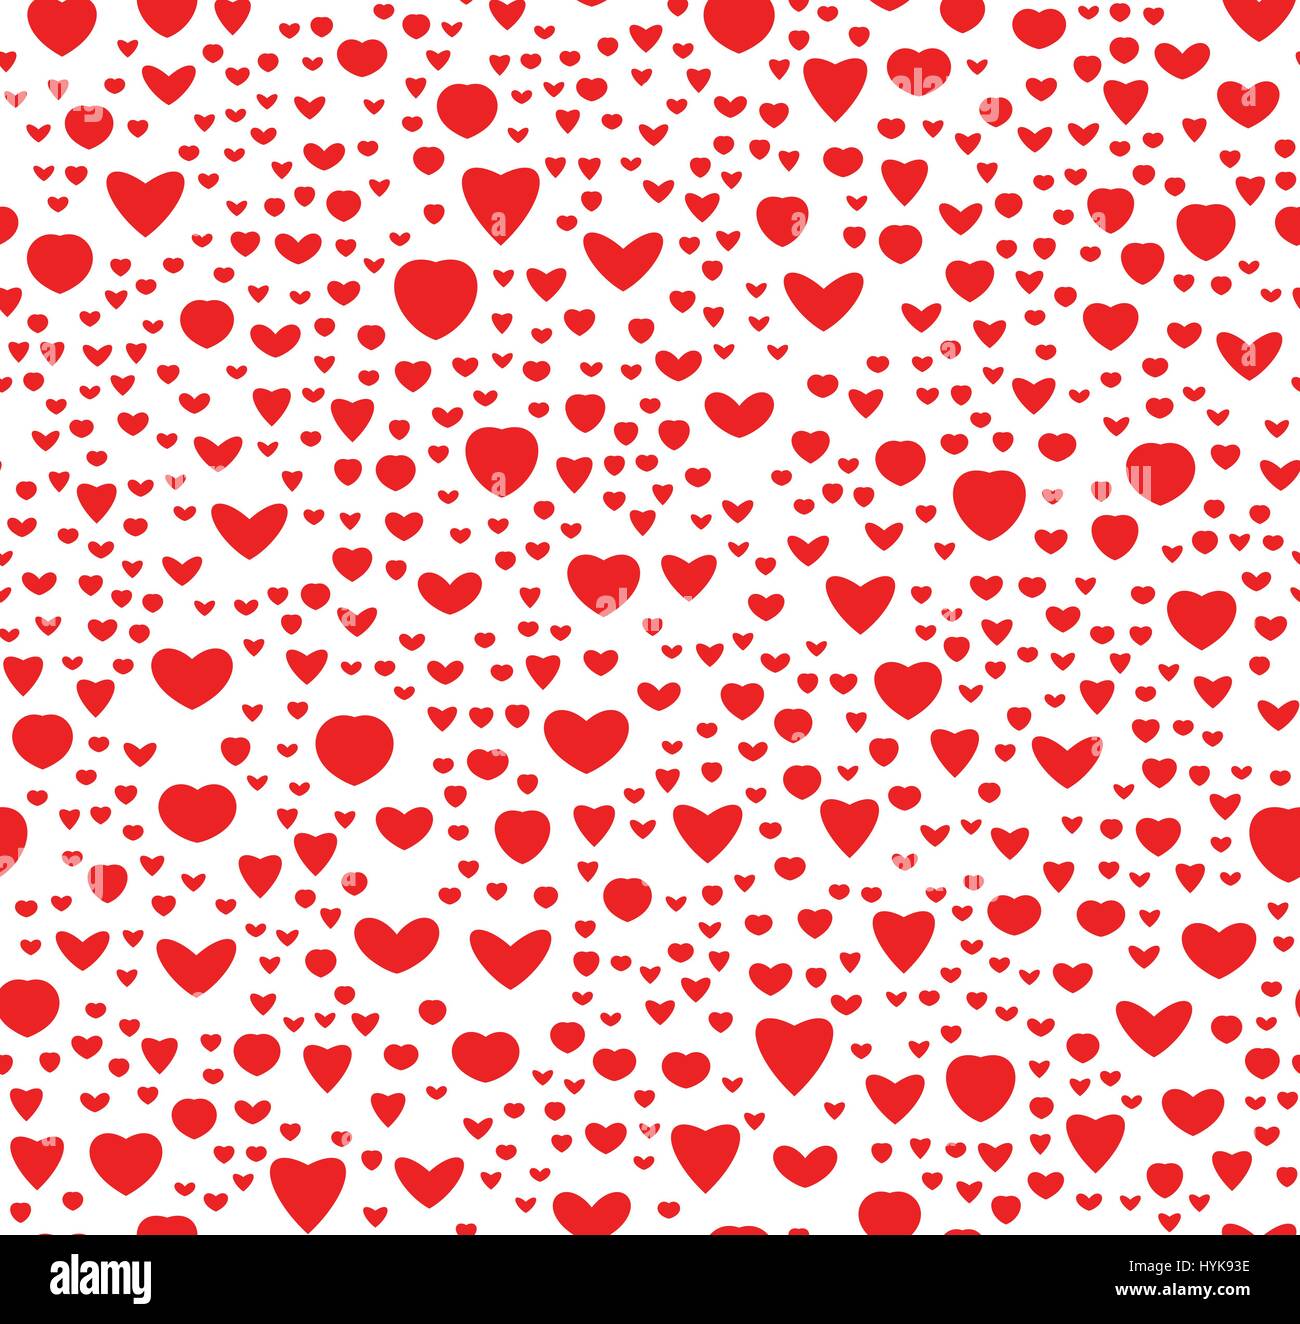 De color rojo y blanco, patrón de corazones perfecta textura de vacaciones, símbolo de amor ilustración vectorial de fondo Ilustración del Vector